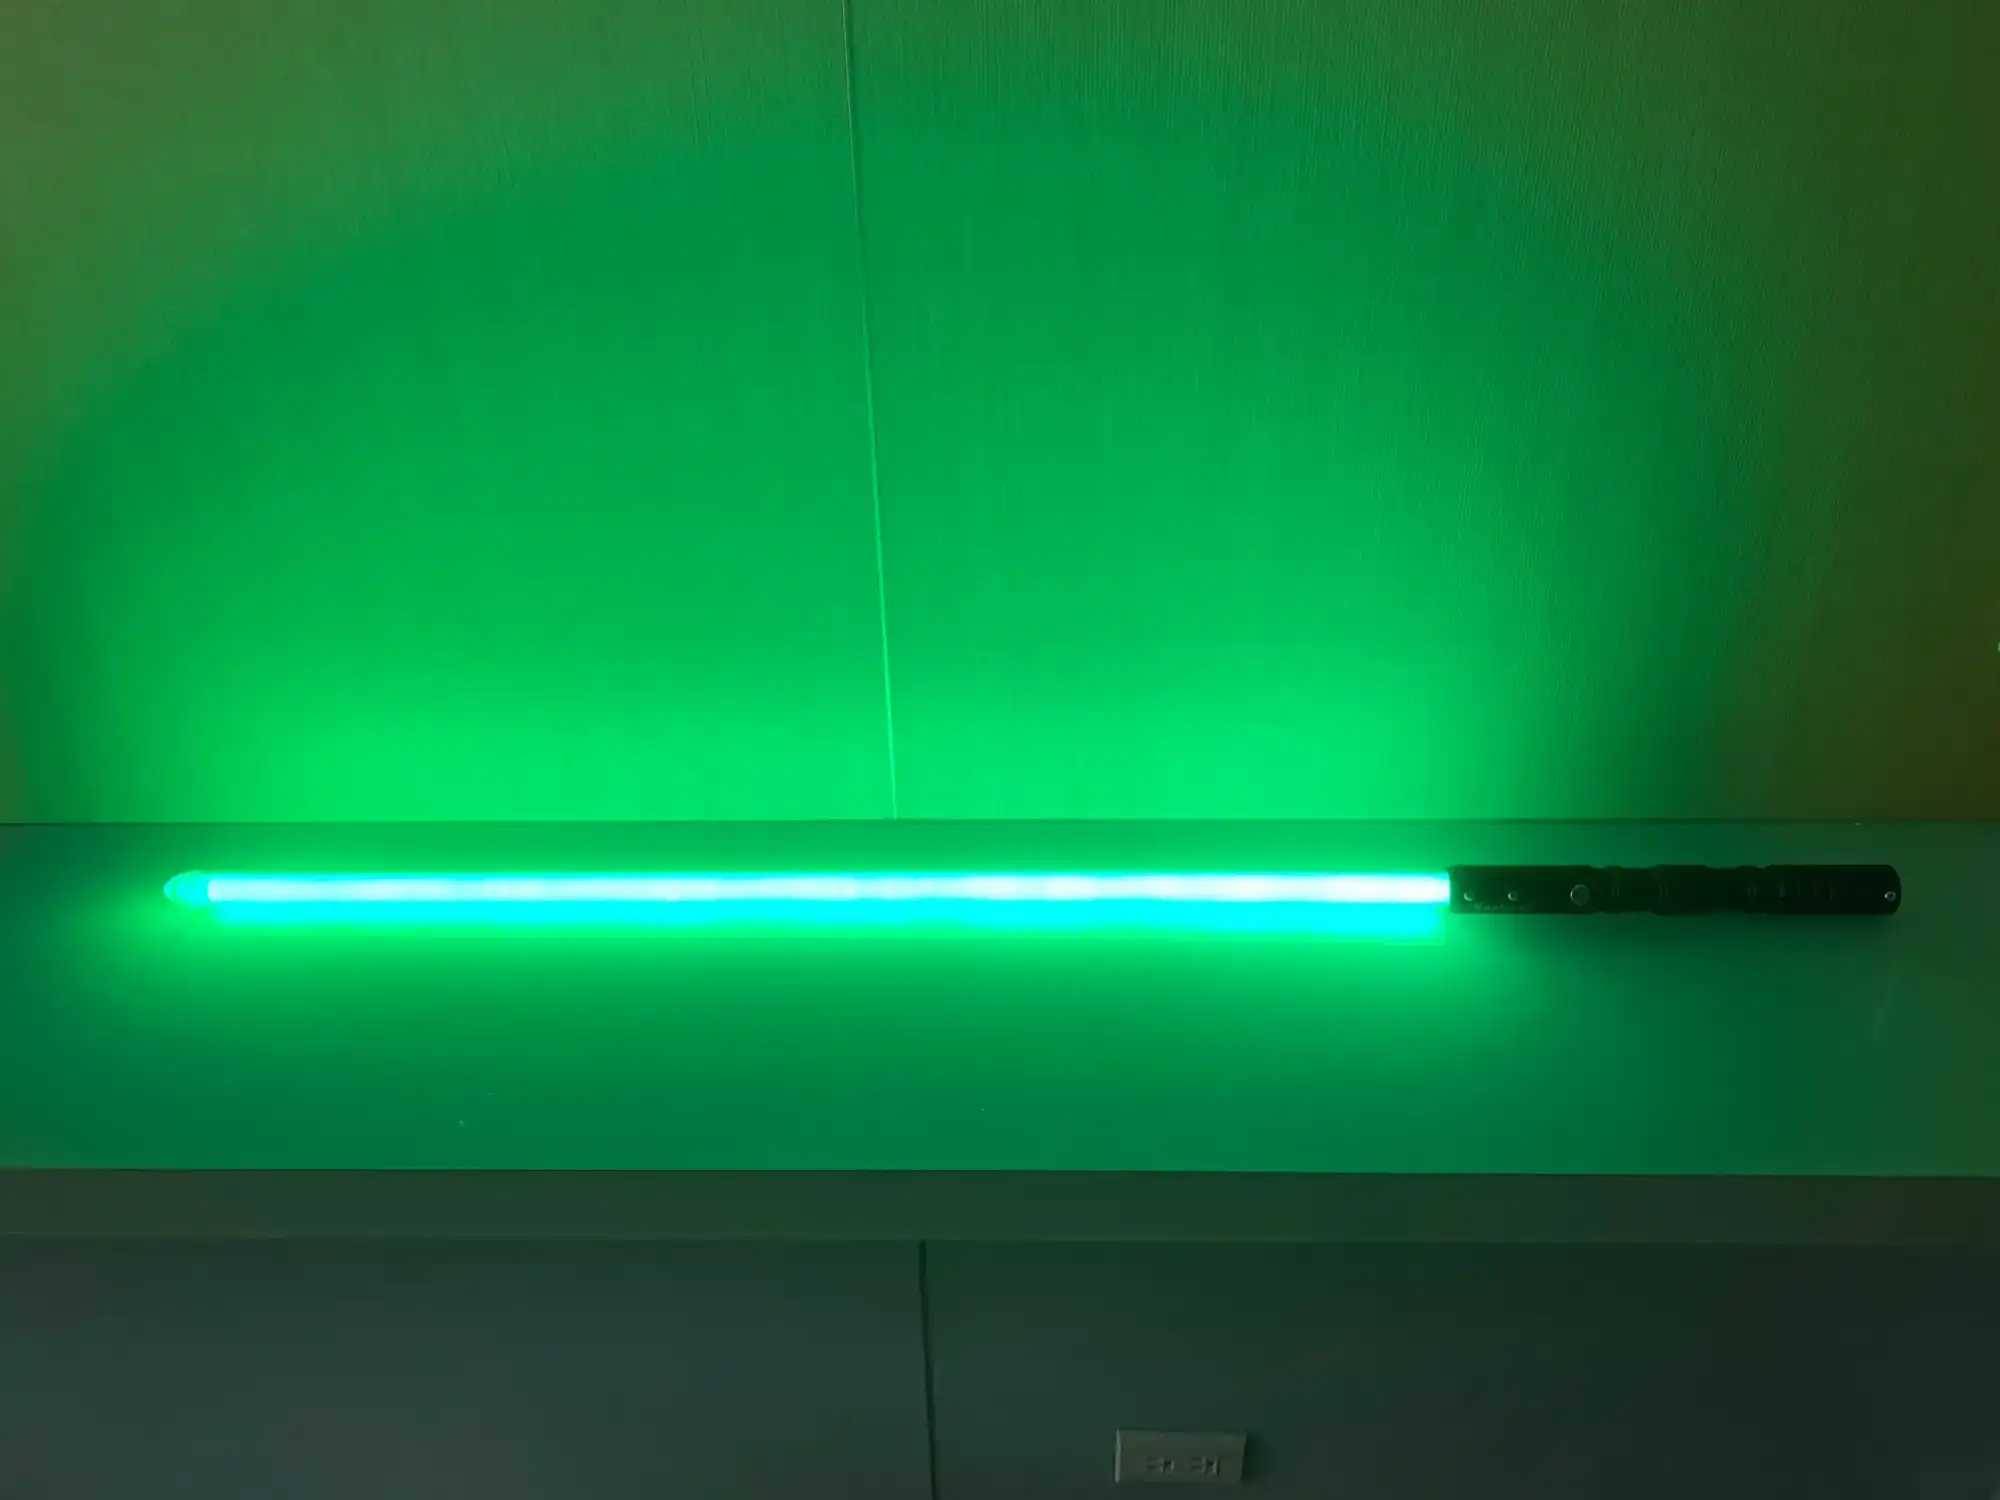 這是「尤達大師」的「雷射寶劍」的相片，上面刻的「Master of Speech Technology」清晰可見，按下按鈕後其發出之綠光甚為明亮。